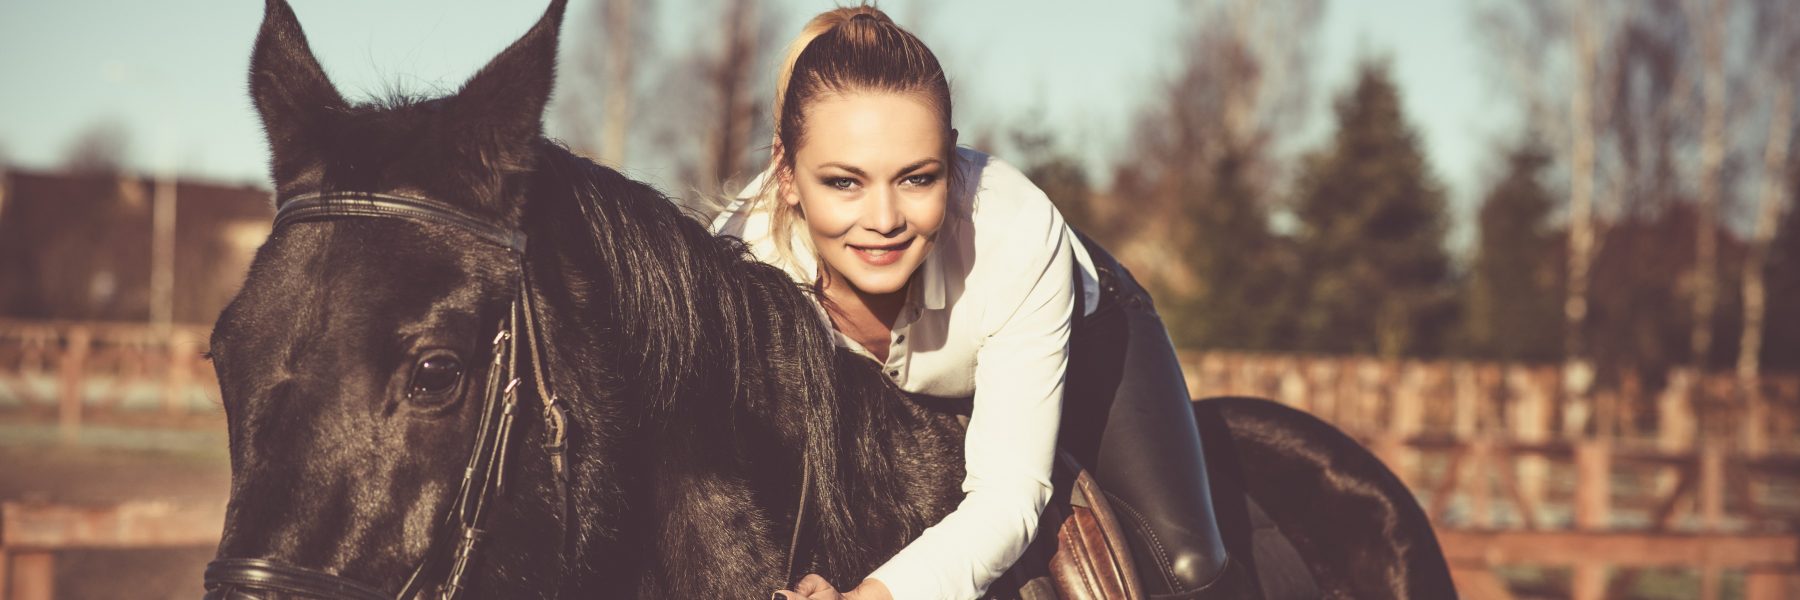 Rencontre d'une femme qui aime l'équitation